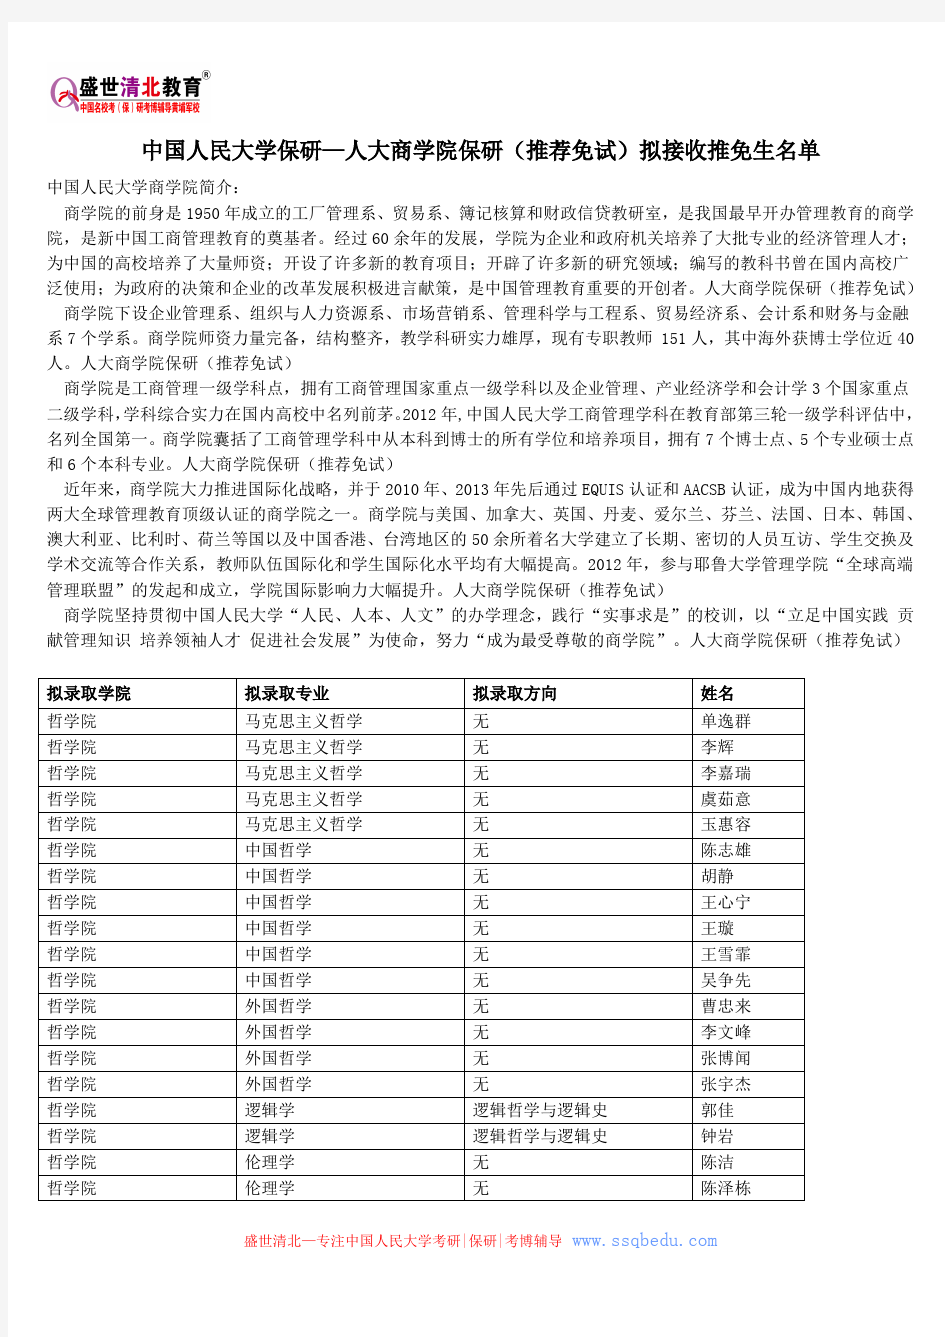 中国人民大学保研—人大商学院保研(推荐免试)拟接收推免生名单